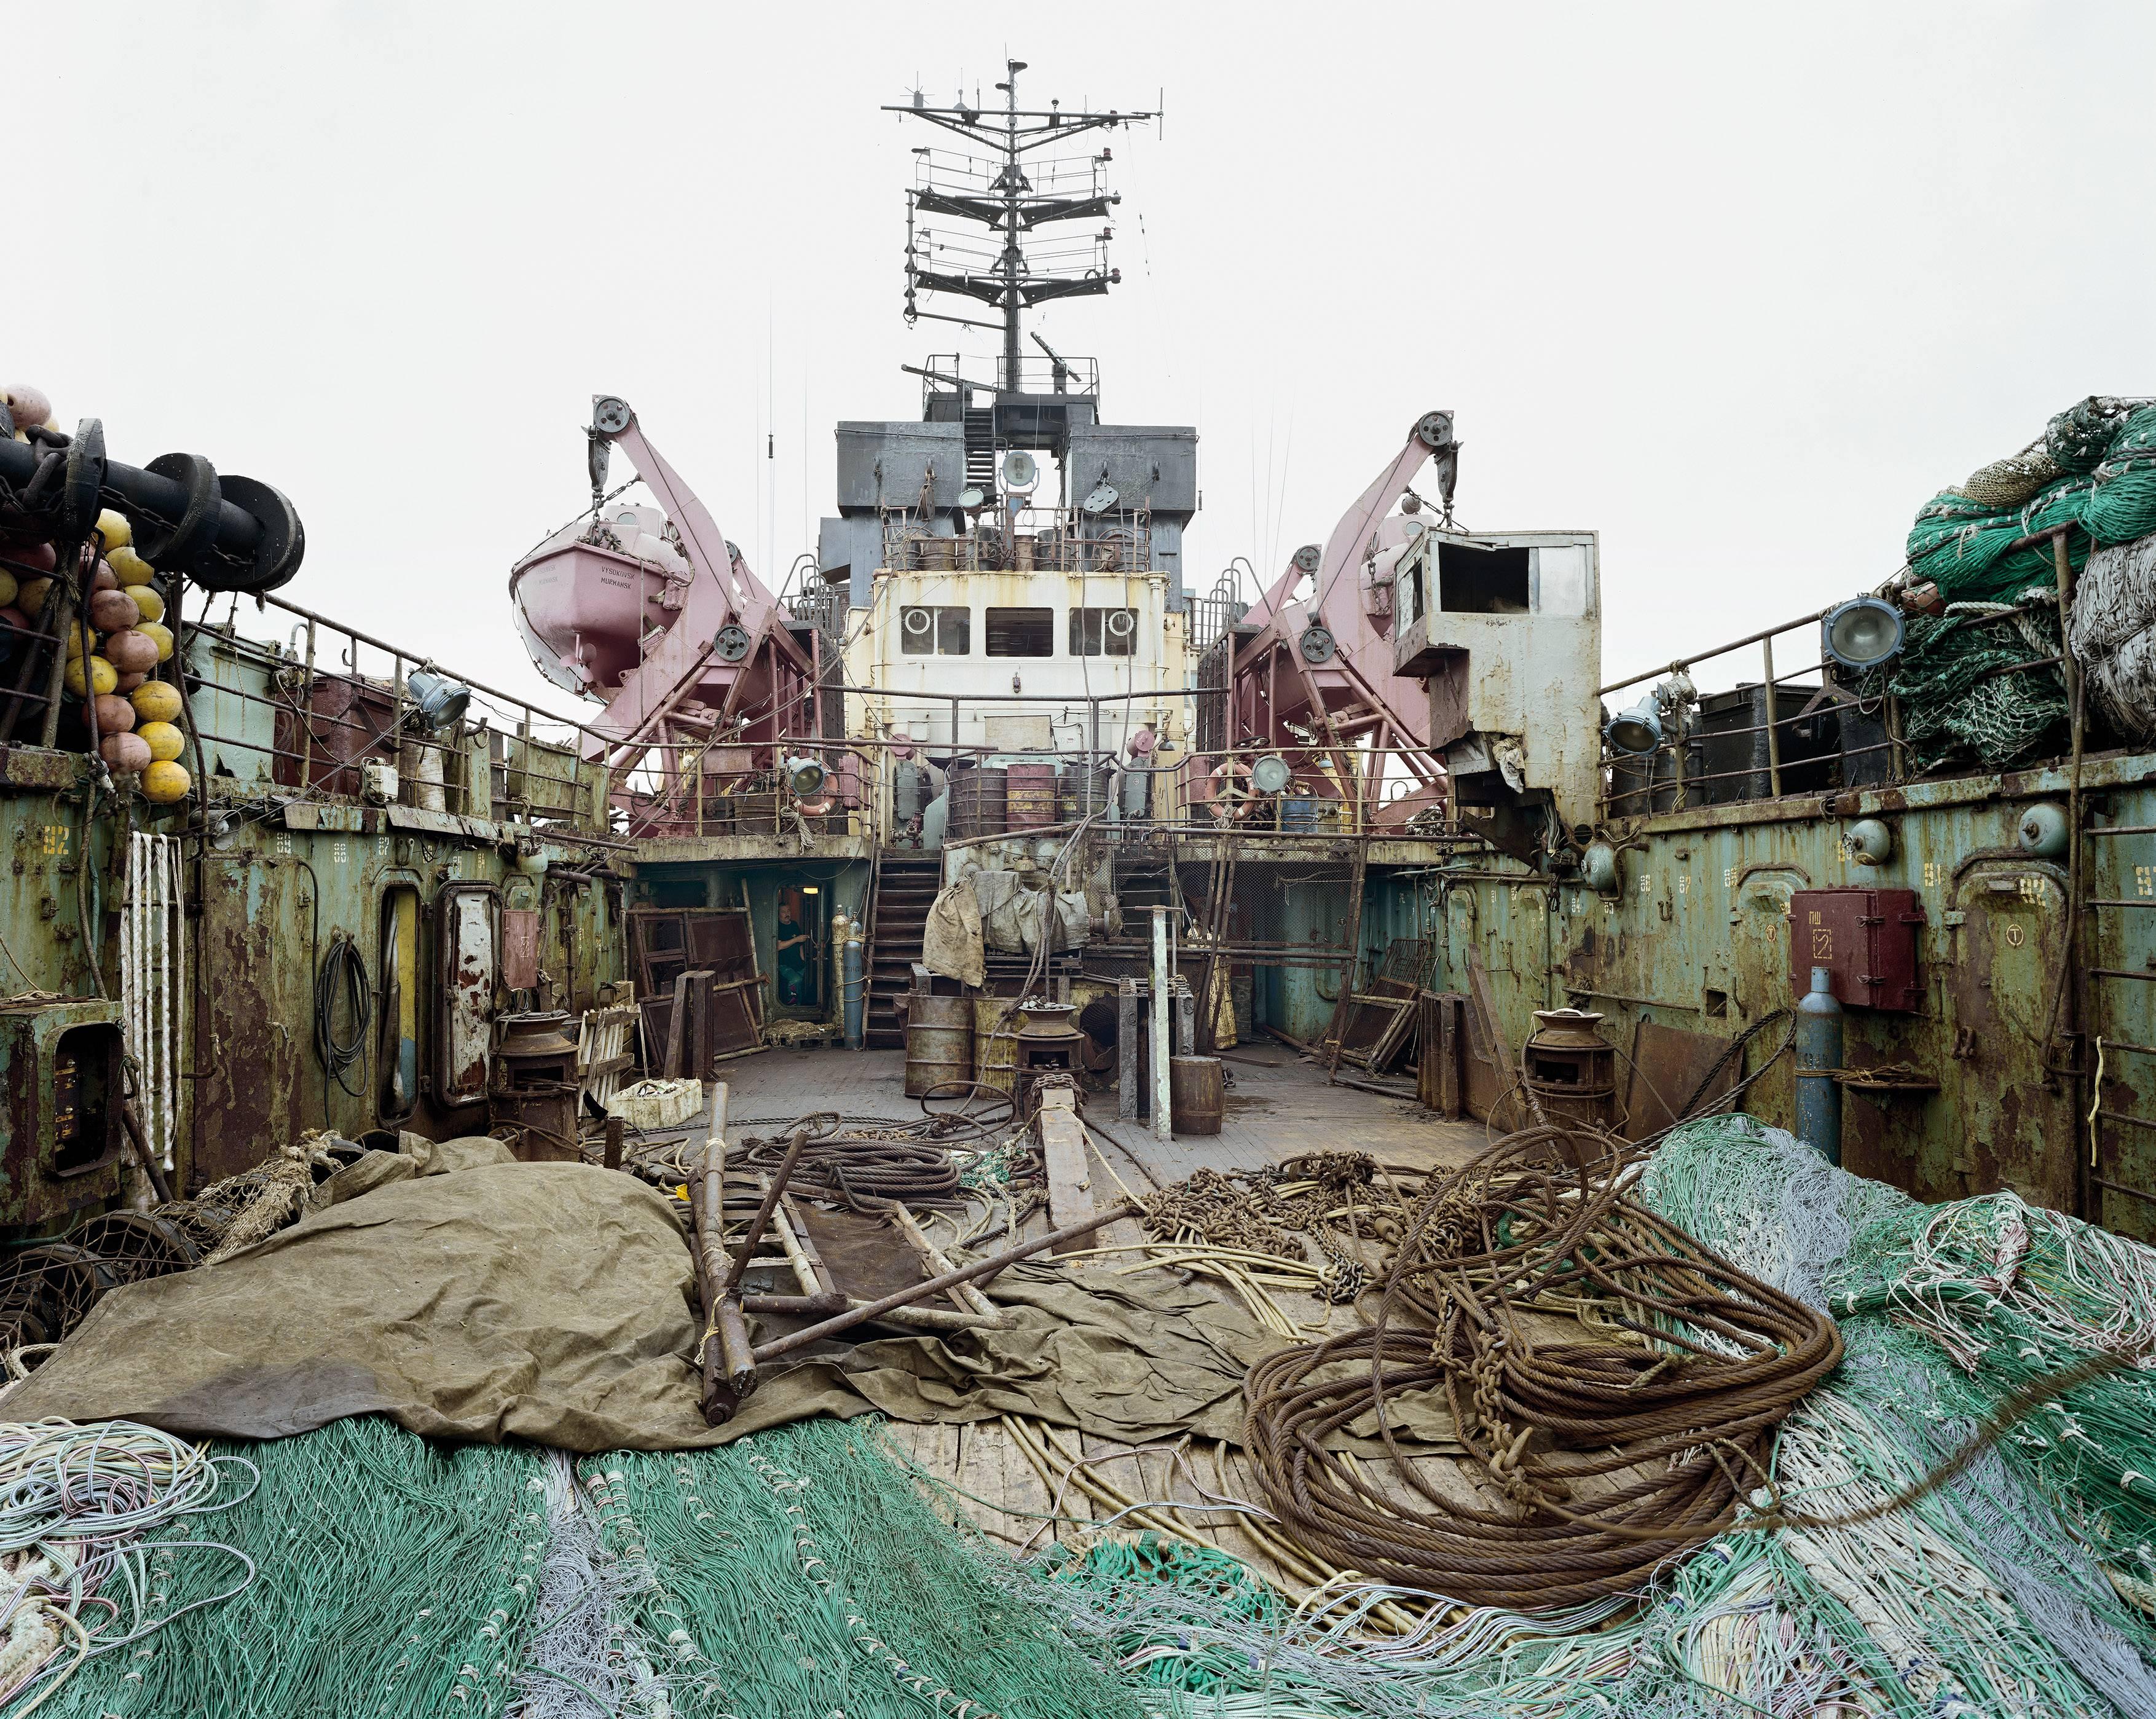 Russischer Fischtrawler, 2002 - Olaf Otto Becker (Landschaftsfarbfotografie)
Signiert auf der Rückseite
Archivierungs-Pigmentdruck

Erhältlich in drei Größen:
25 x 29,5 Zoll, aus einer Auflage von vier Stück
45.5 x 54  zoll, aus einer Auflage von